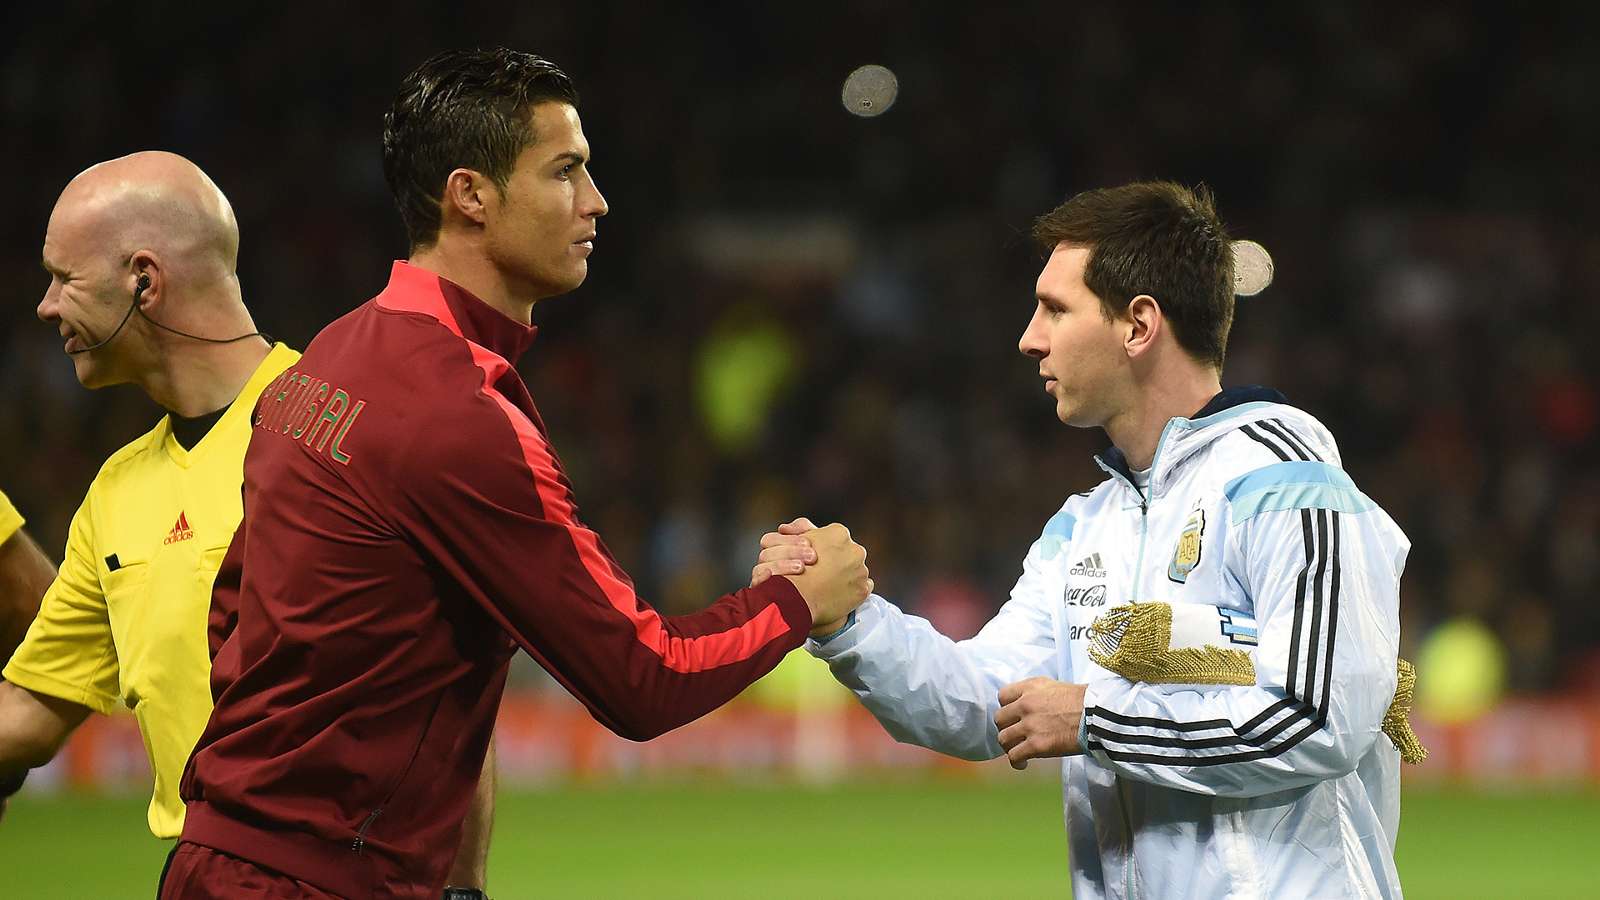 Messi vs. Ronaldo Debate: A Tale of Two Titans